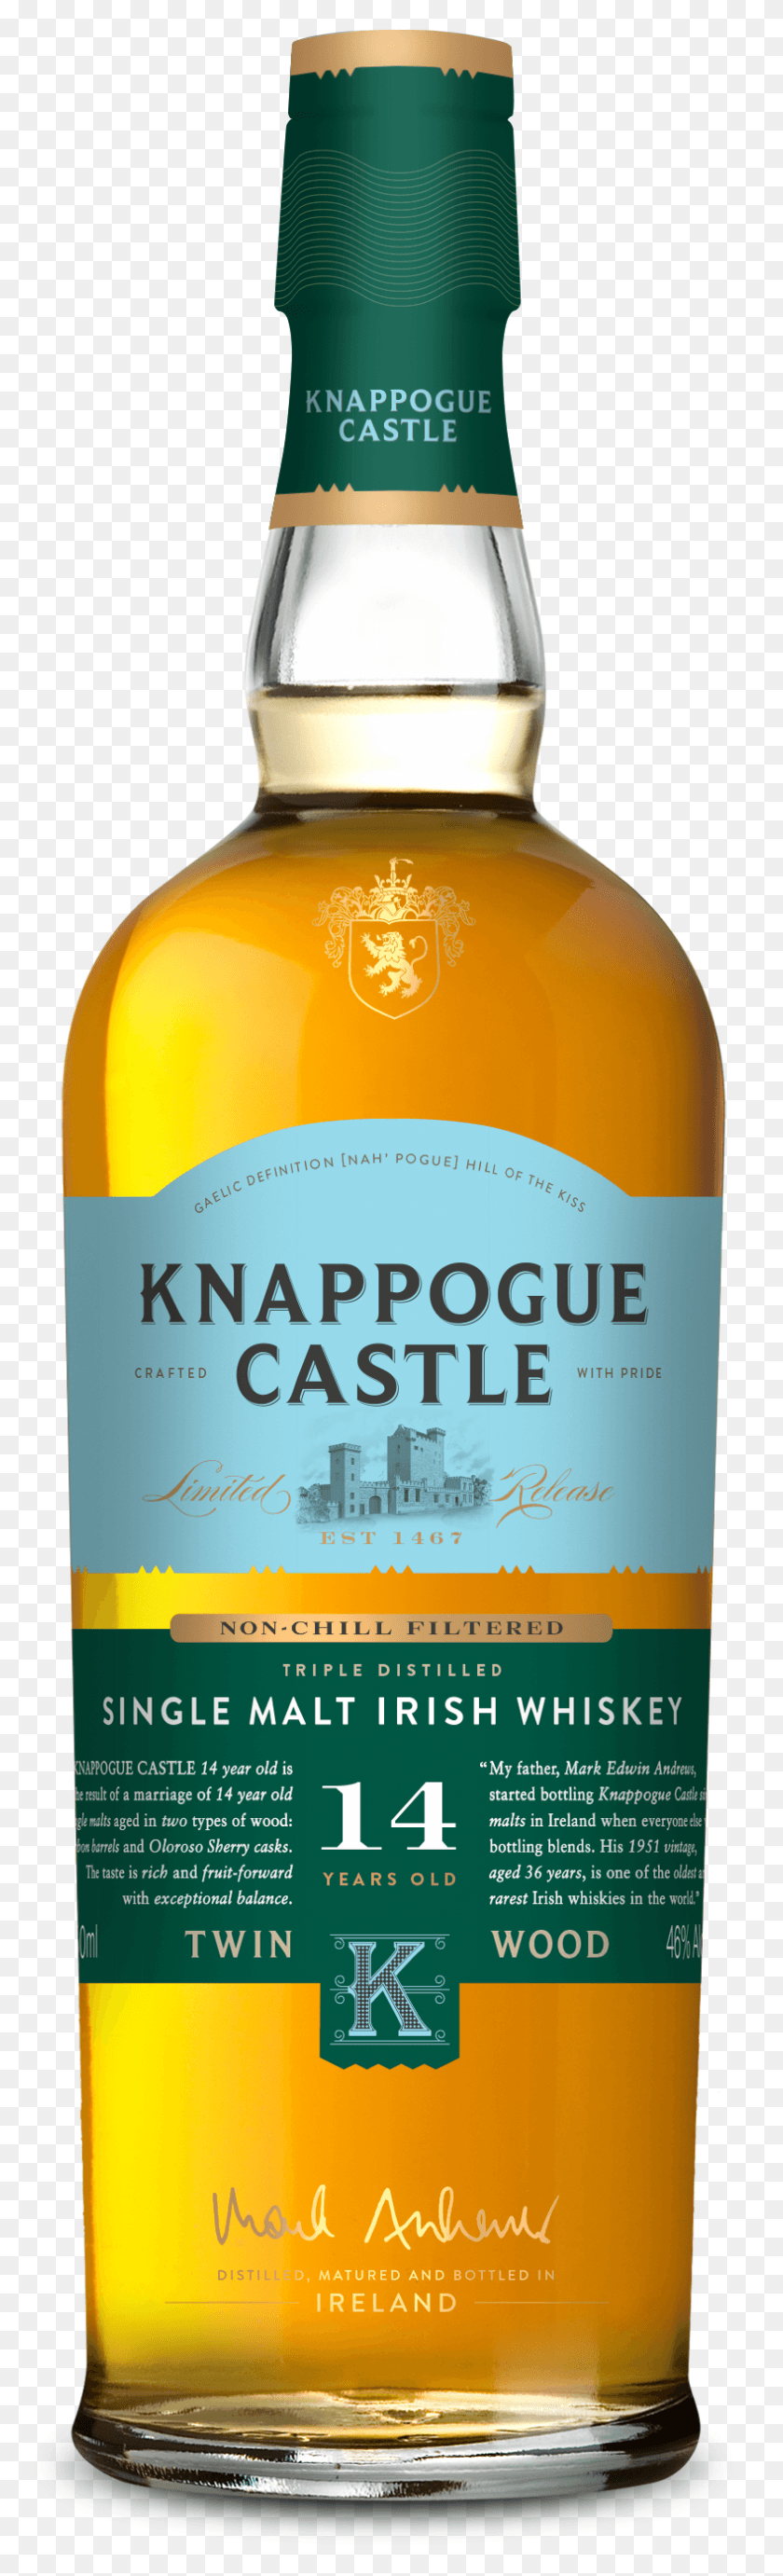 788x2731 Su Hogar Es Su Castillo, Castillo De Knappogue, Whisky, Licor, Alcohol, Bebidas Hd Png